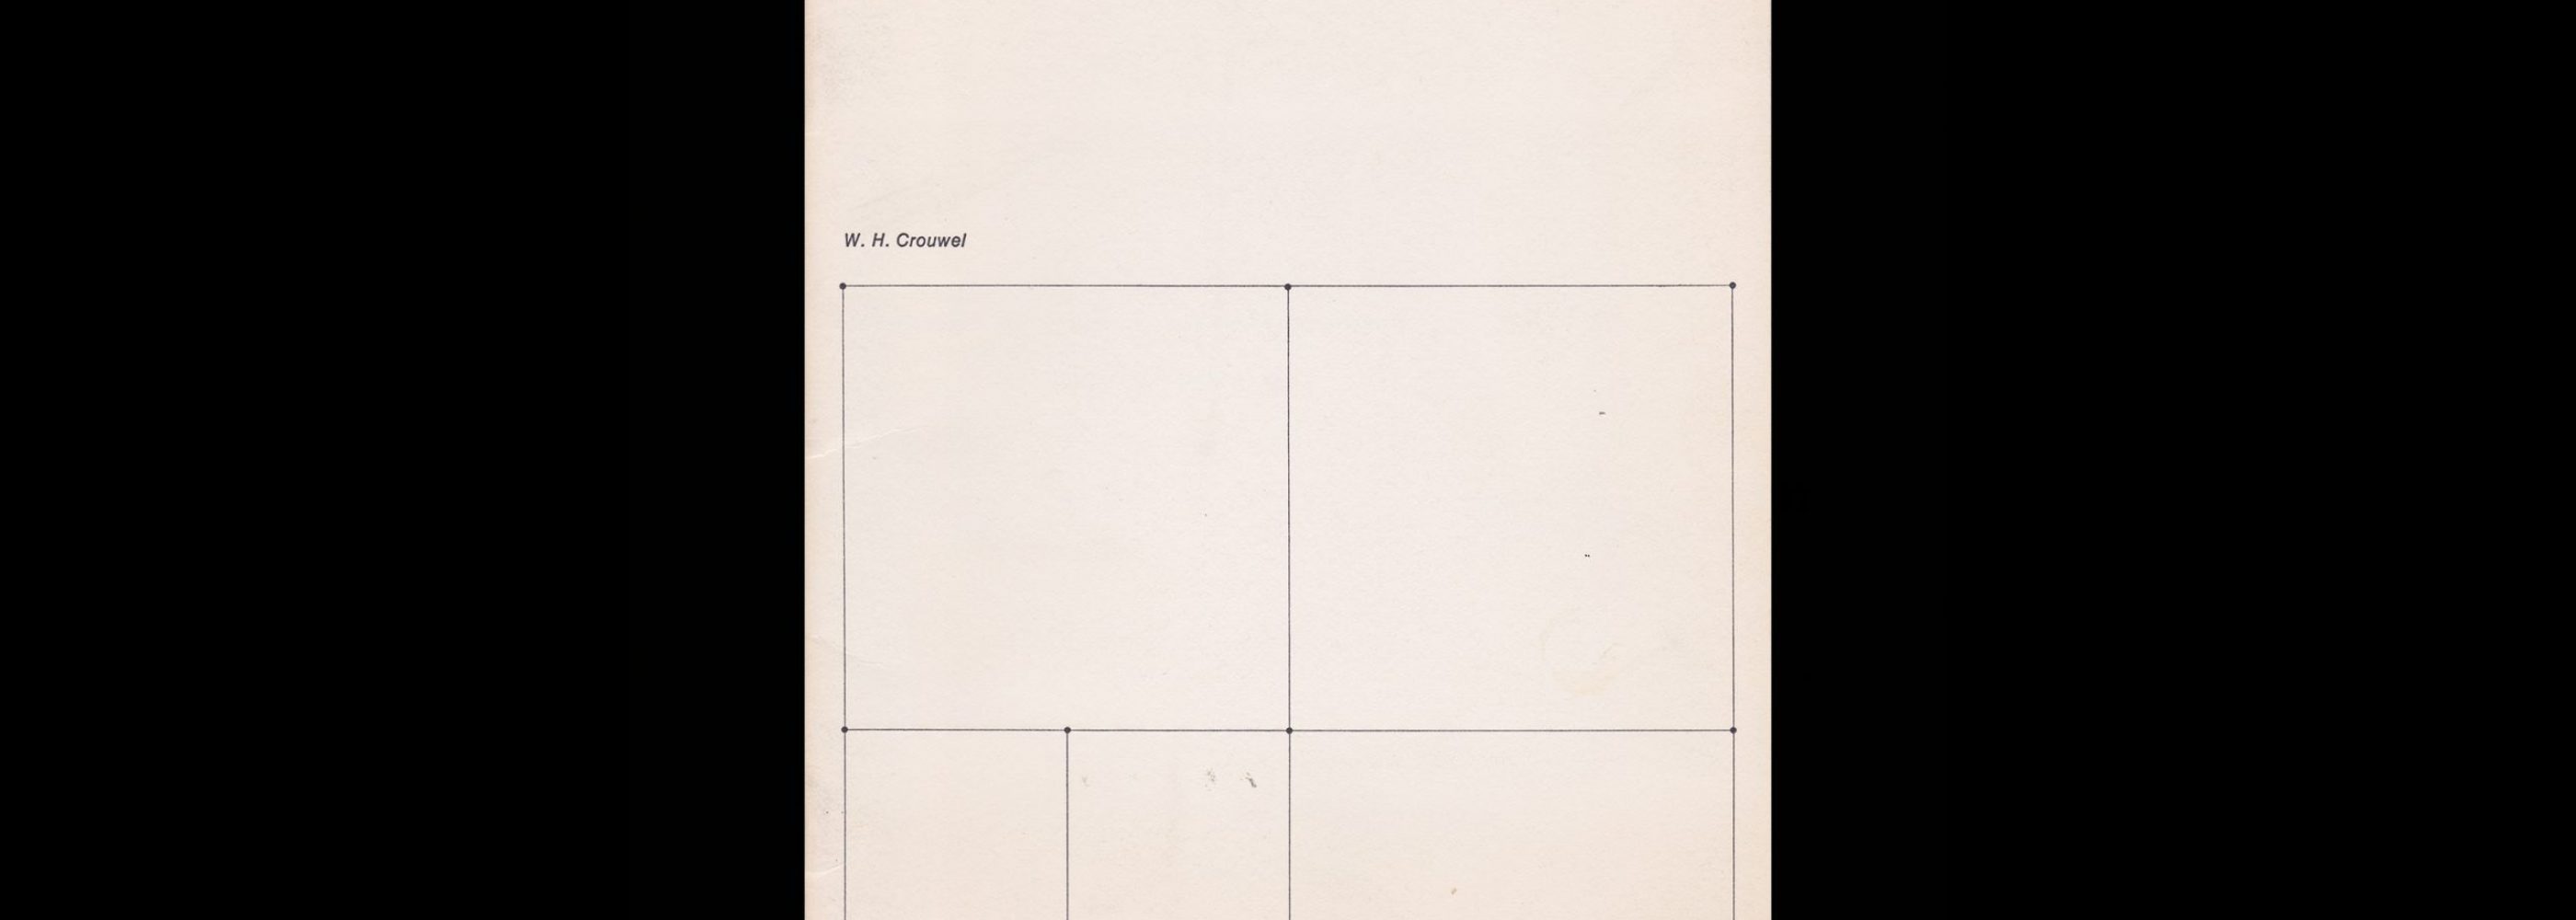 Vormgeving - door wie?, 1973 designed by Wim Crouwel